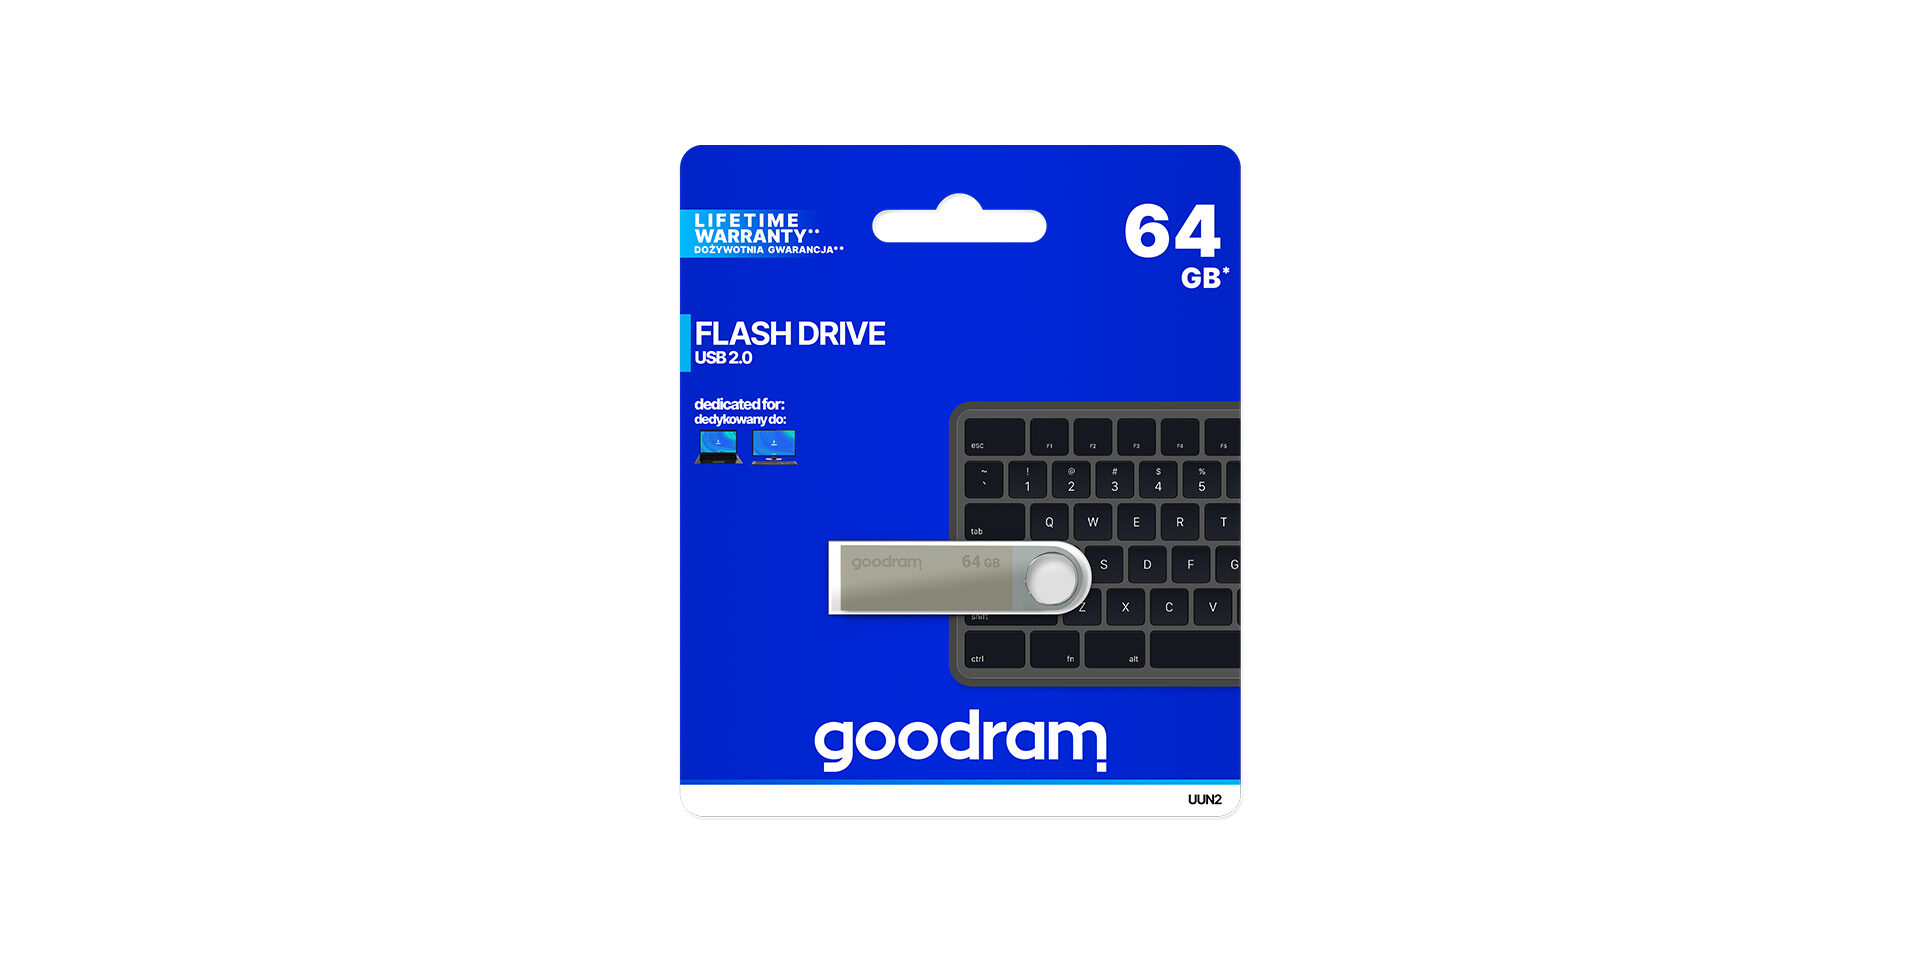 USB UUN2 marki Goodram w opakowaniu